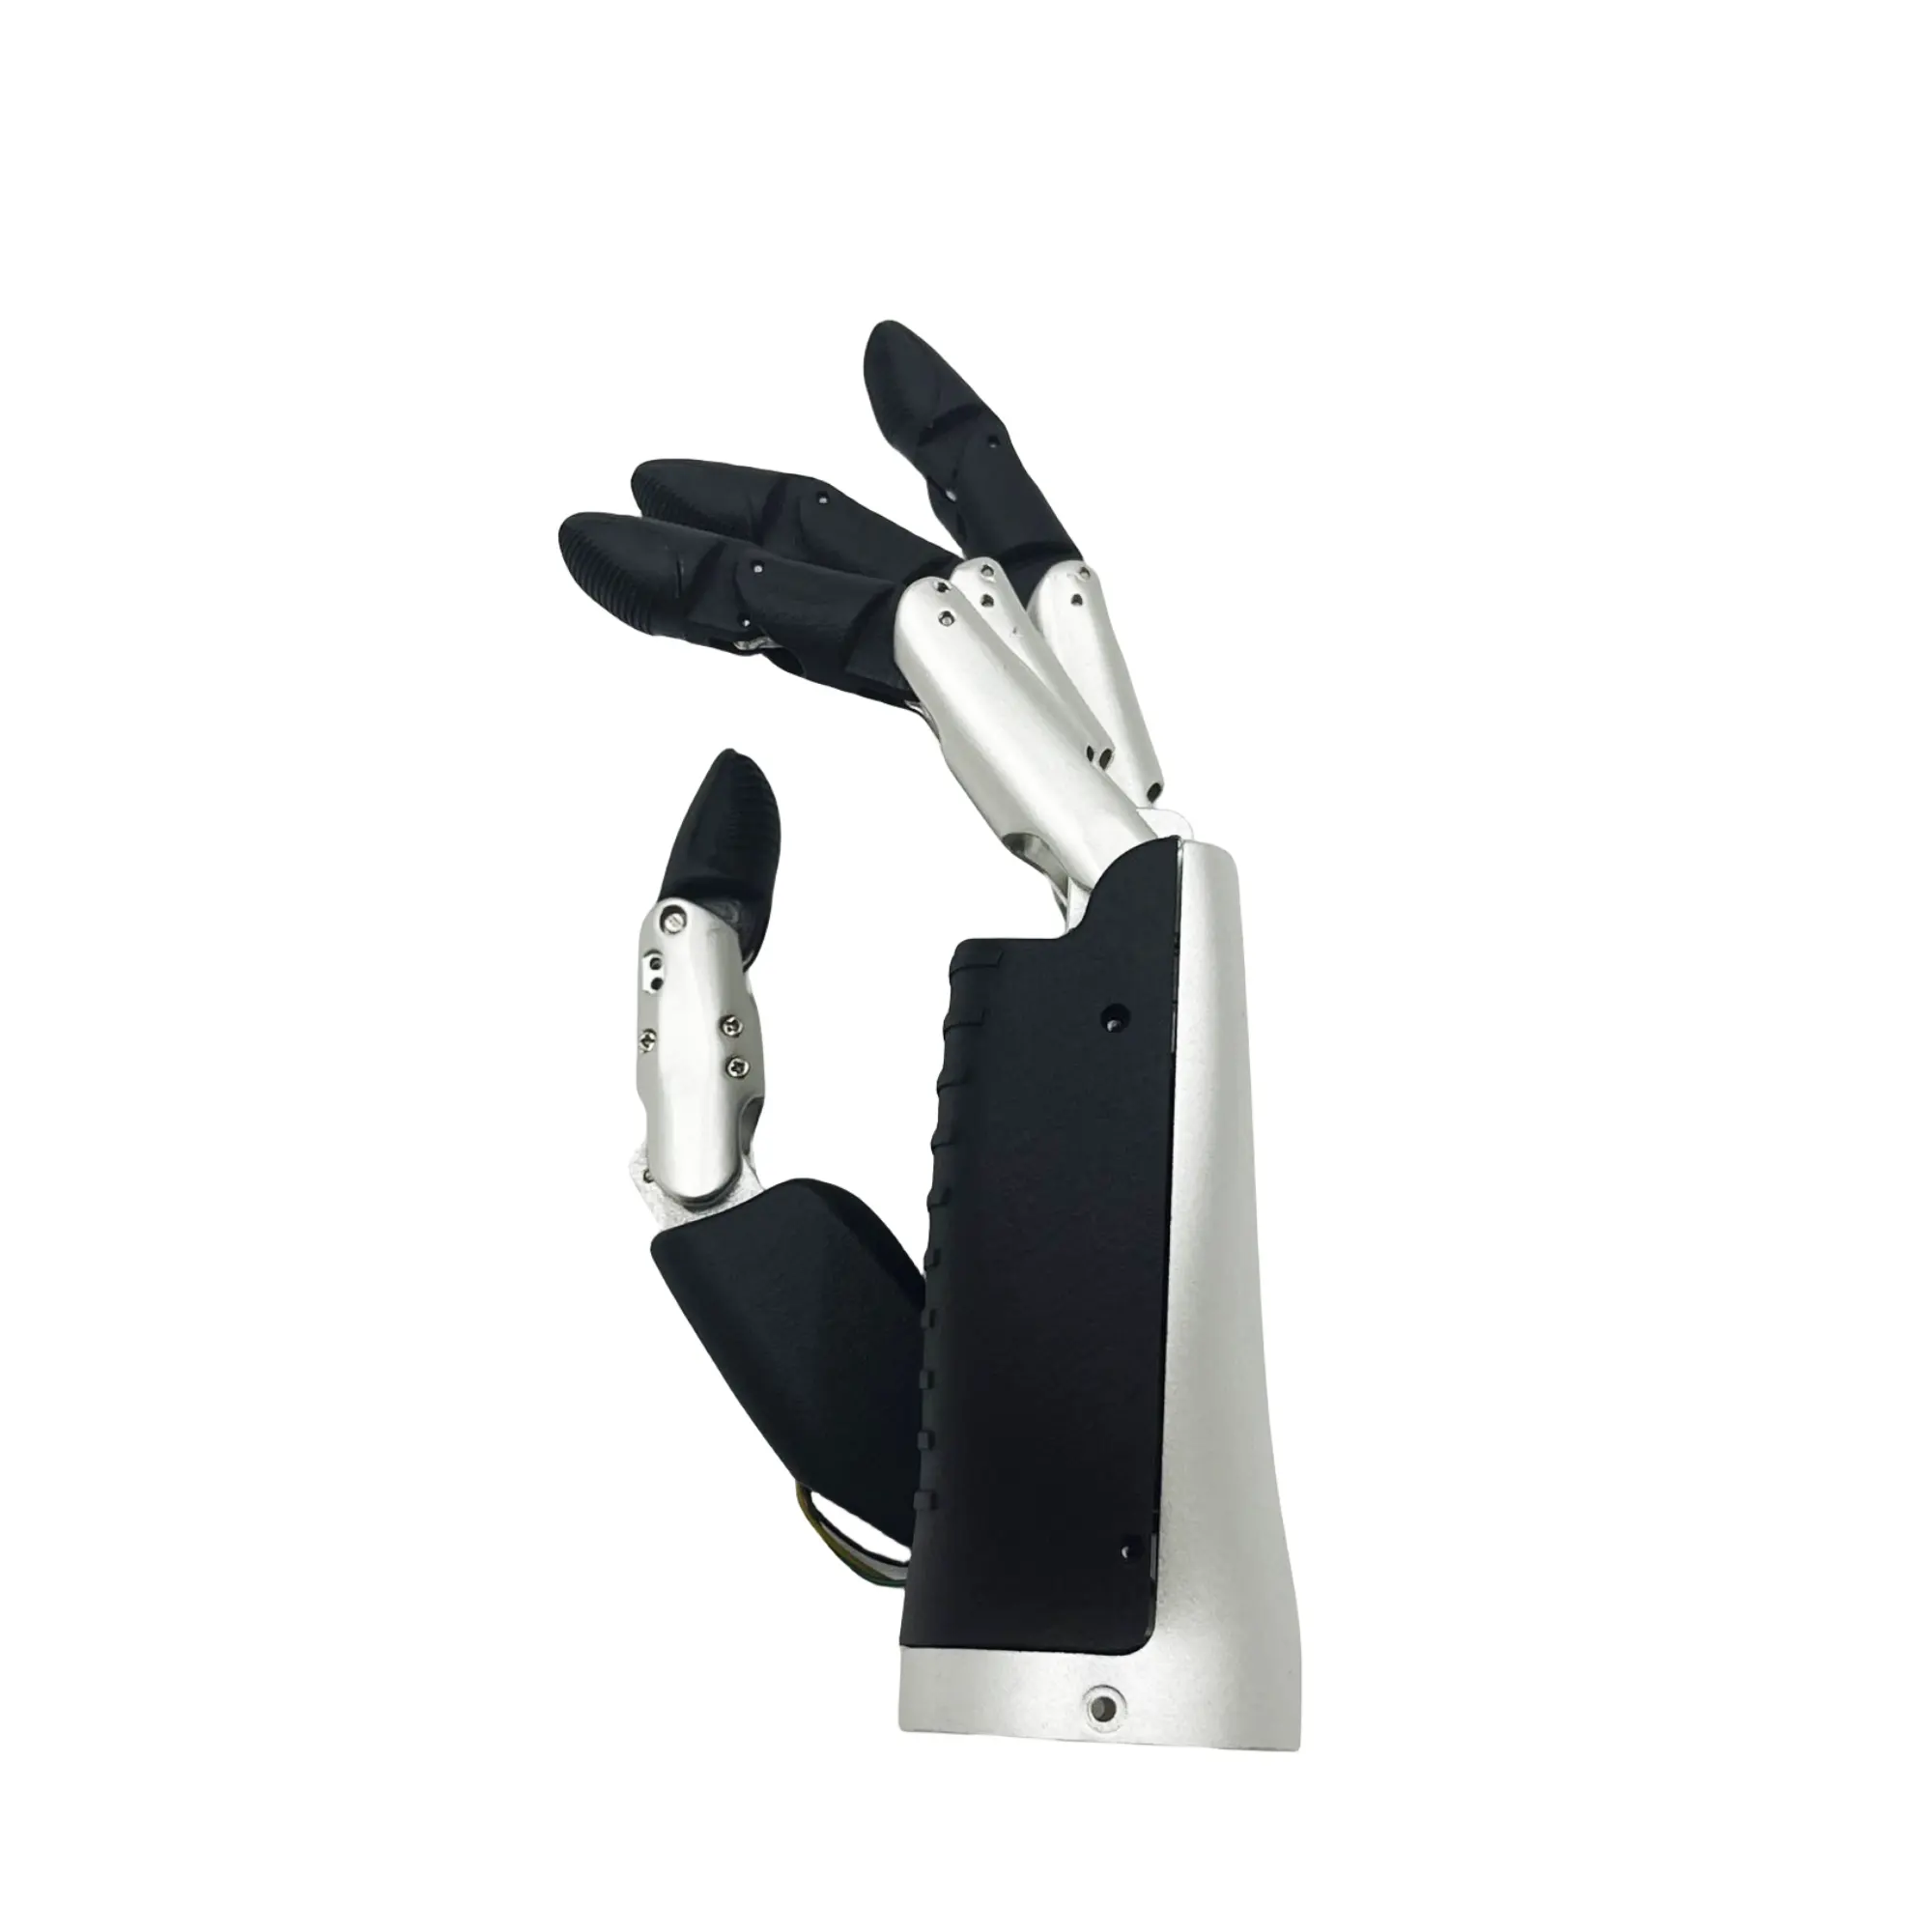 6DOF 생체 모방 손 관절, 5 개의 손가락 손재주 손, 생체 공학 로봇 손 관절